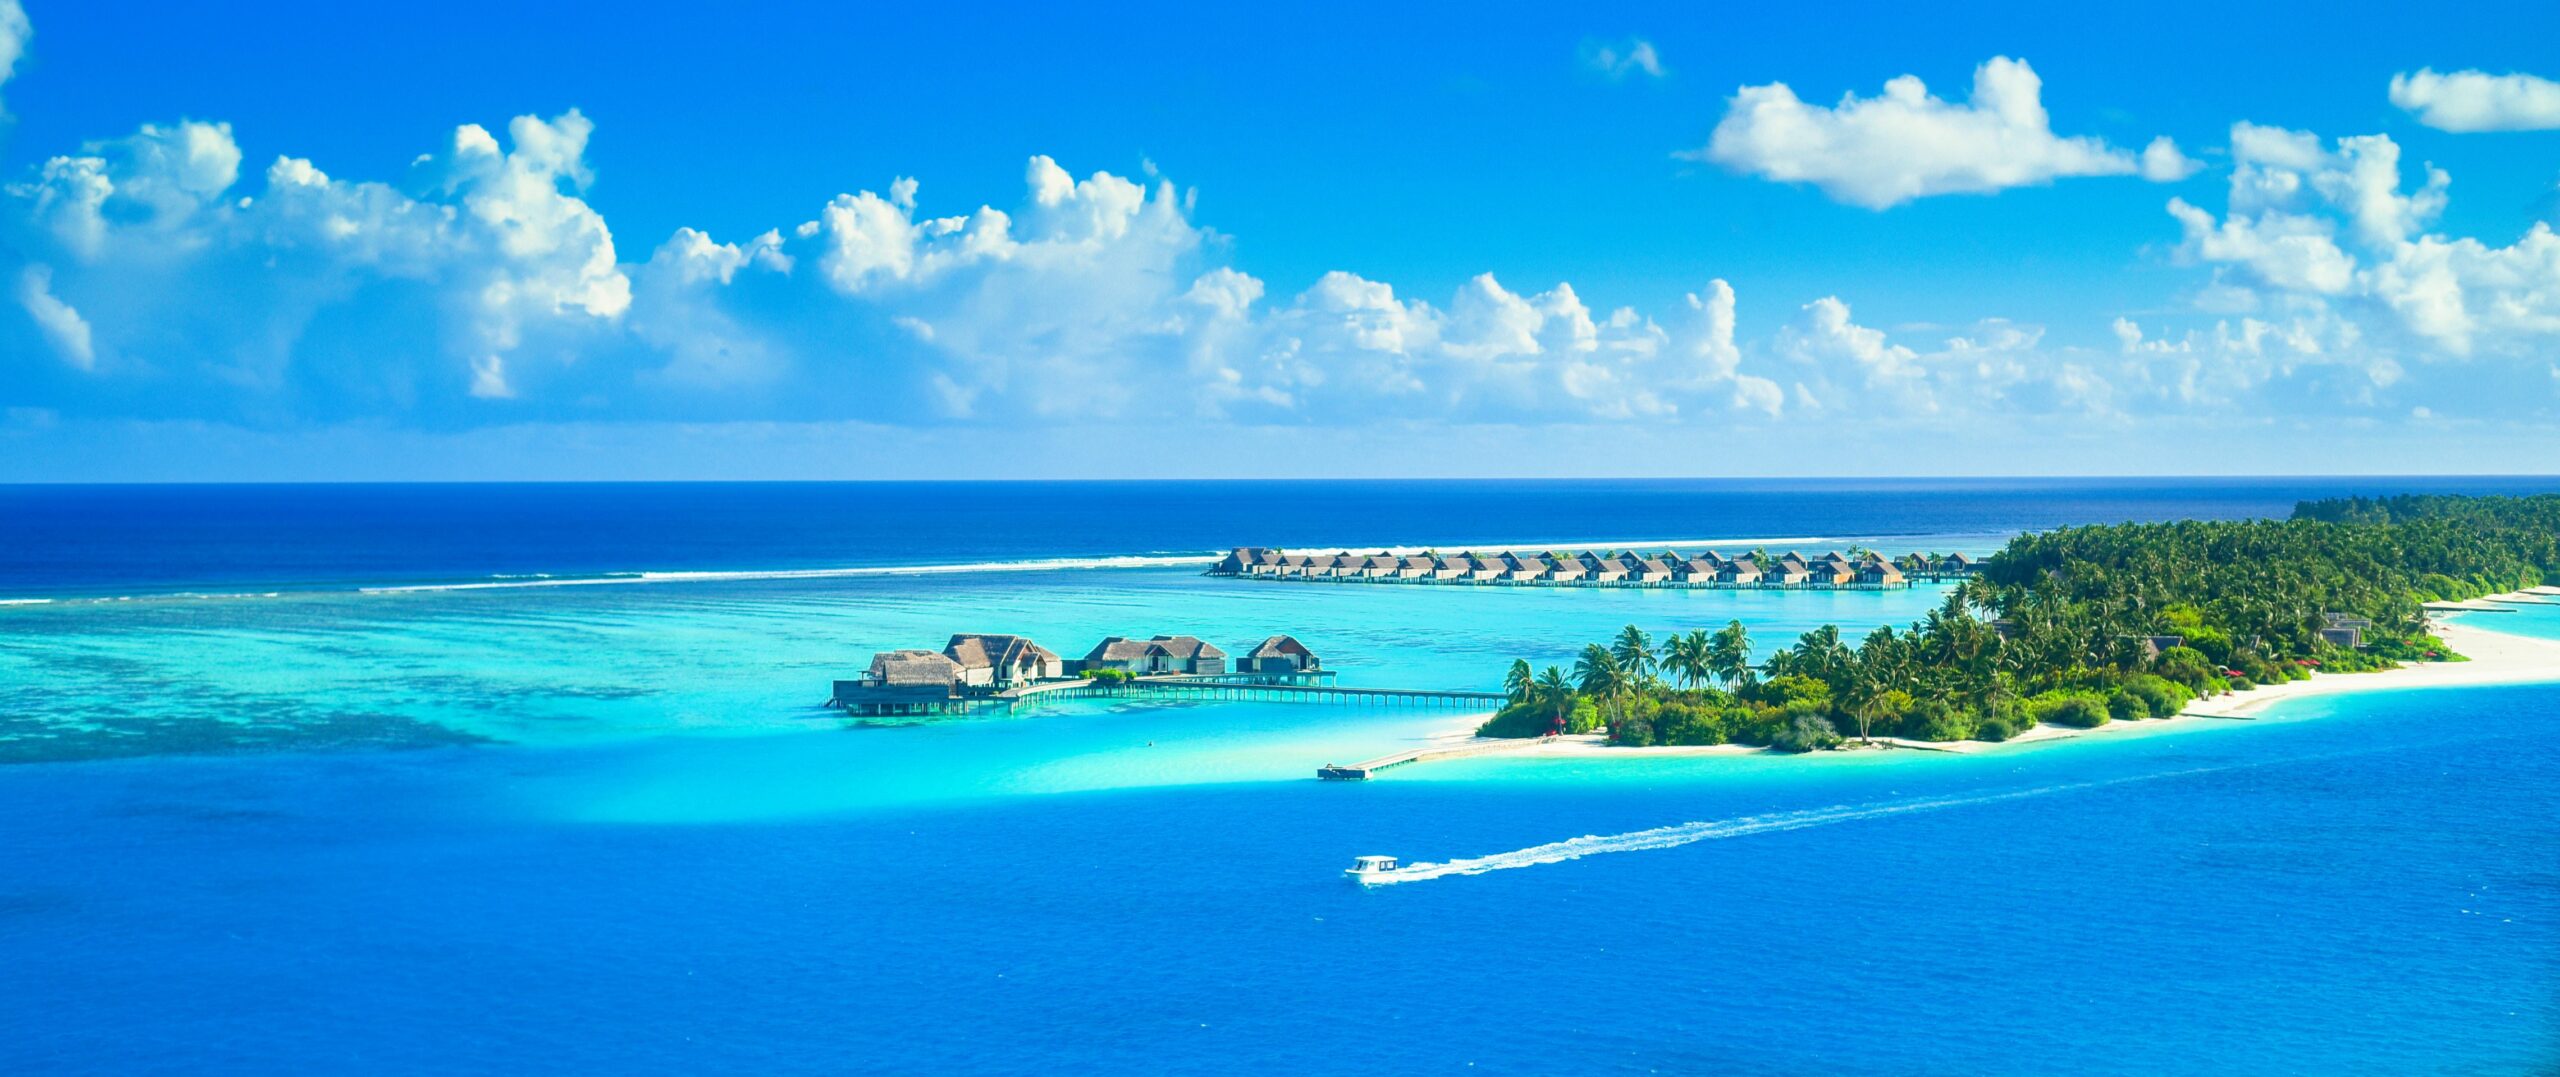 BookMe Maldives